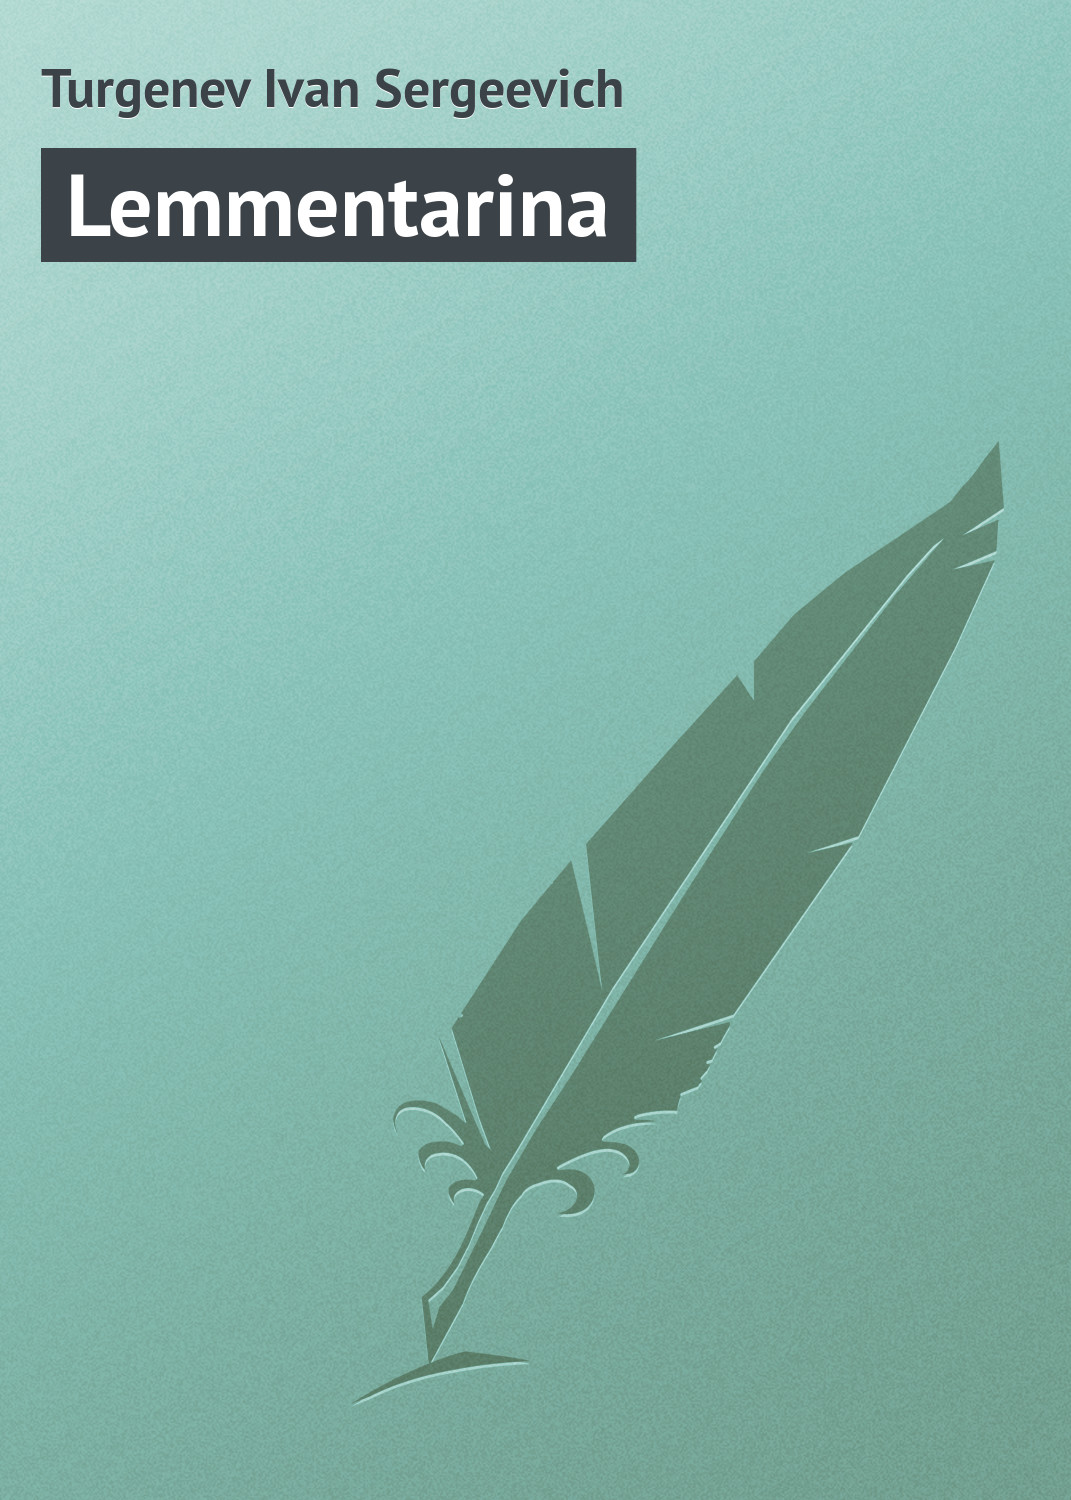 Книга Lemmentarina из серии , созданная Turgenev Ivan, может относится к жанру Литература 19 века, Русская классика. Стоимость электронной книги Lemmentarina с идентификатором 23166675 составляет 5.99 руб.